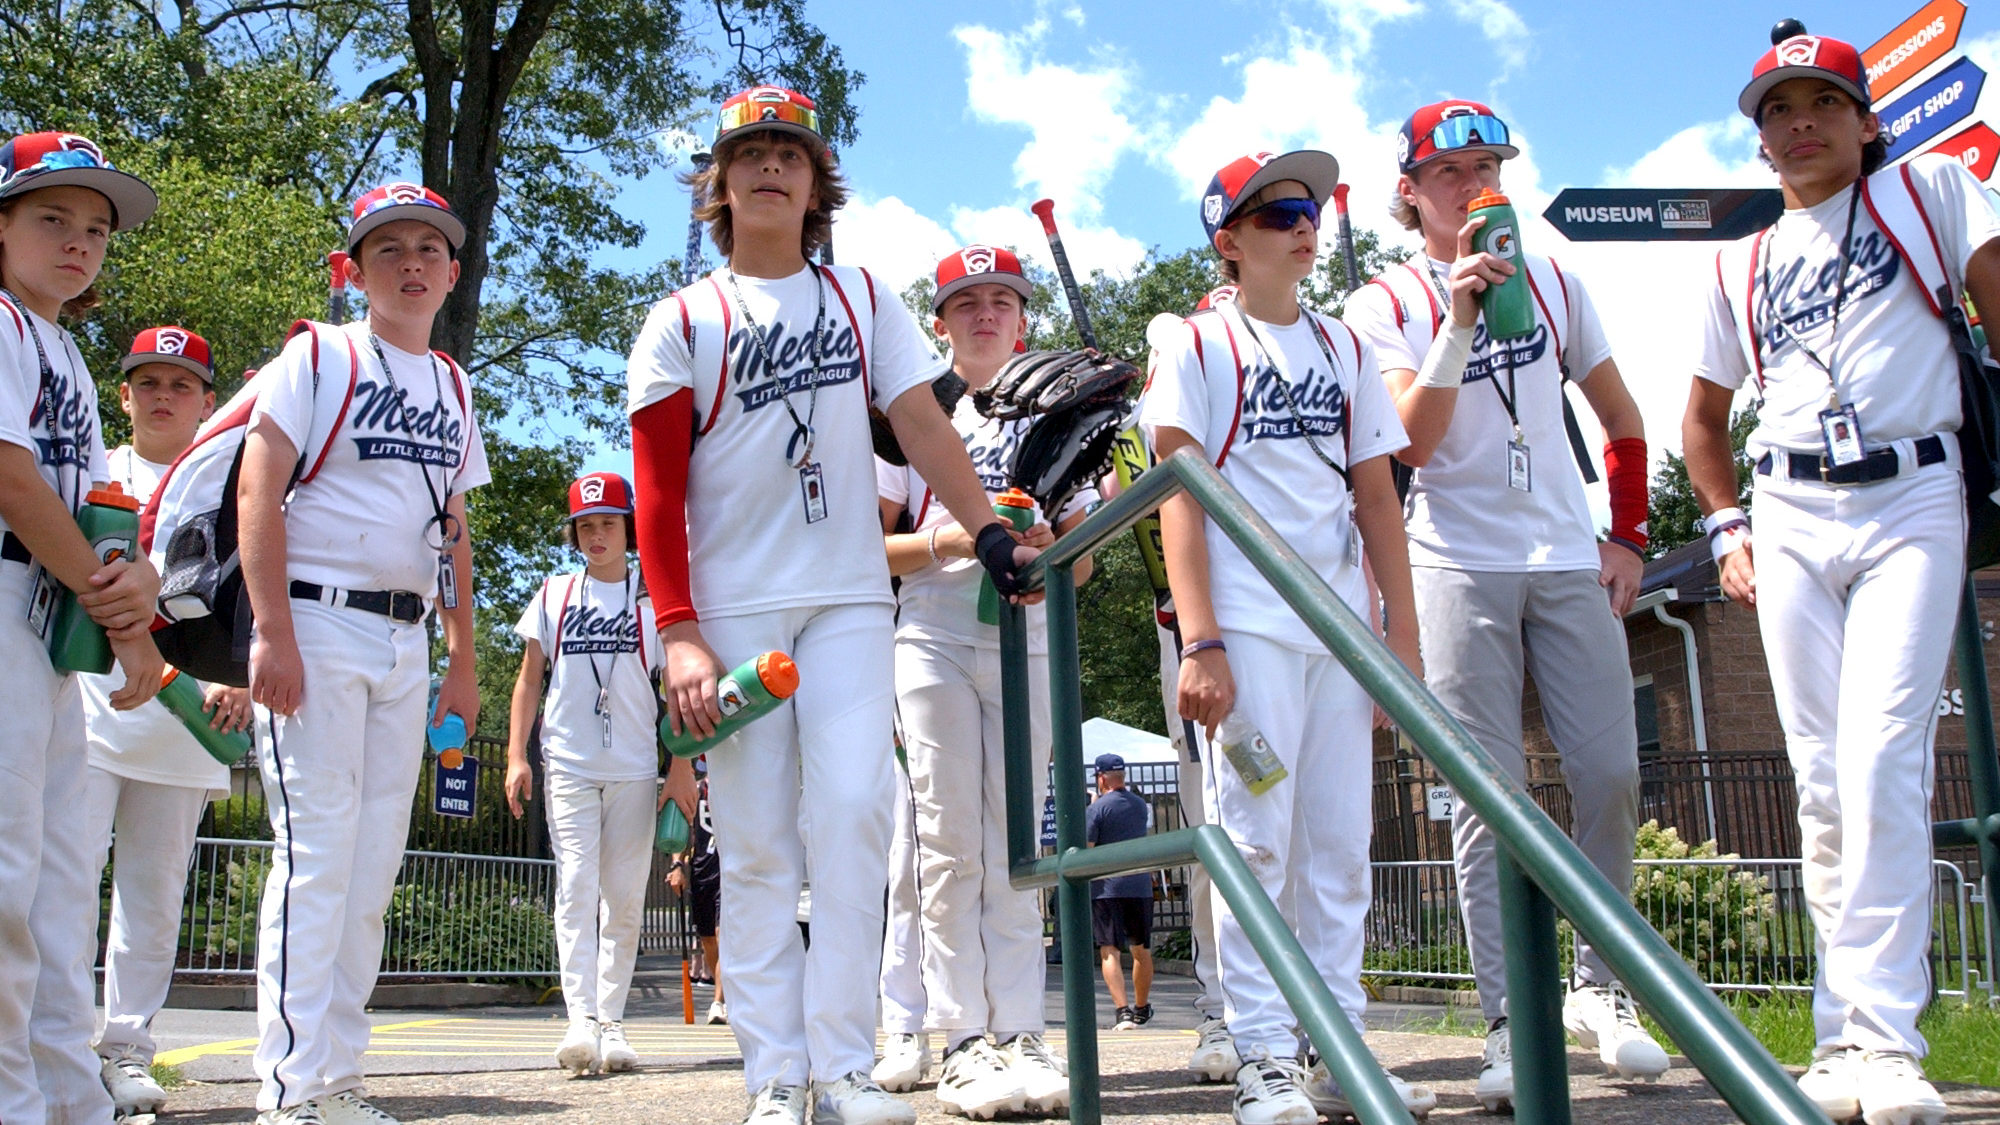 Team Iowa advances at the Little League World Series